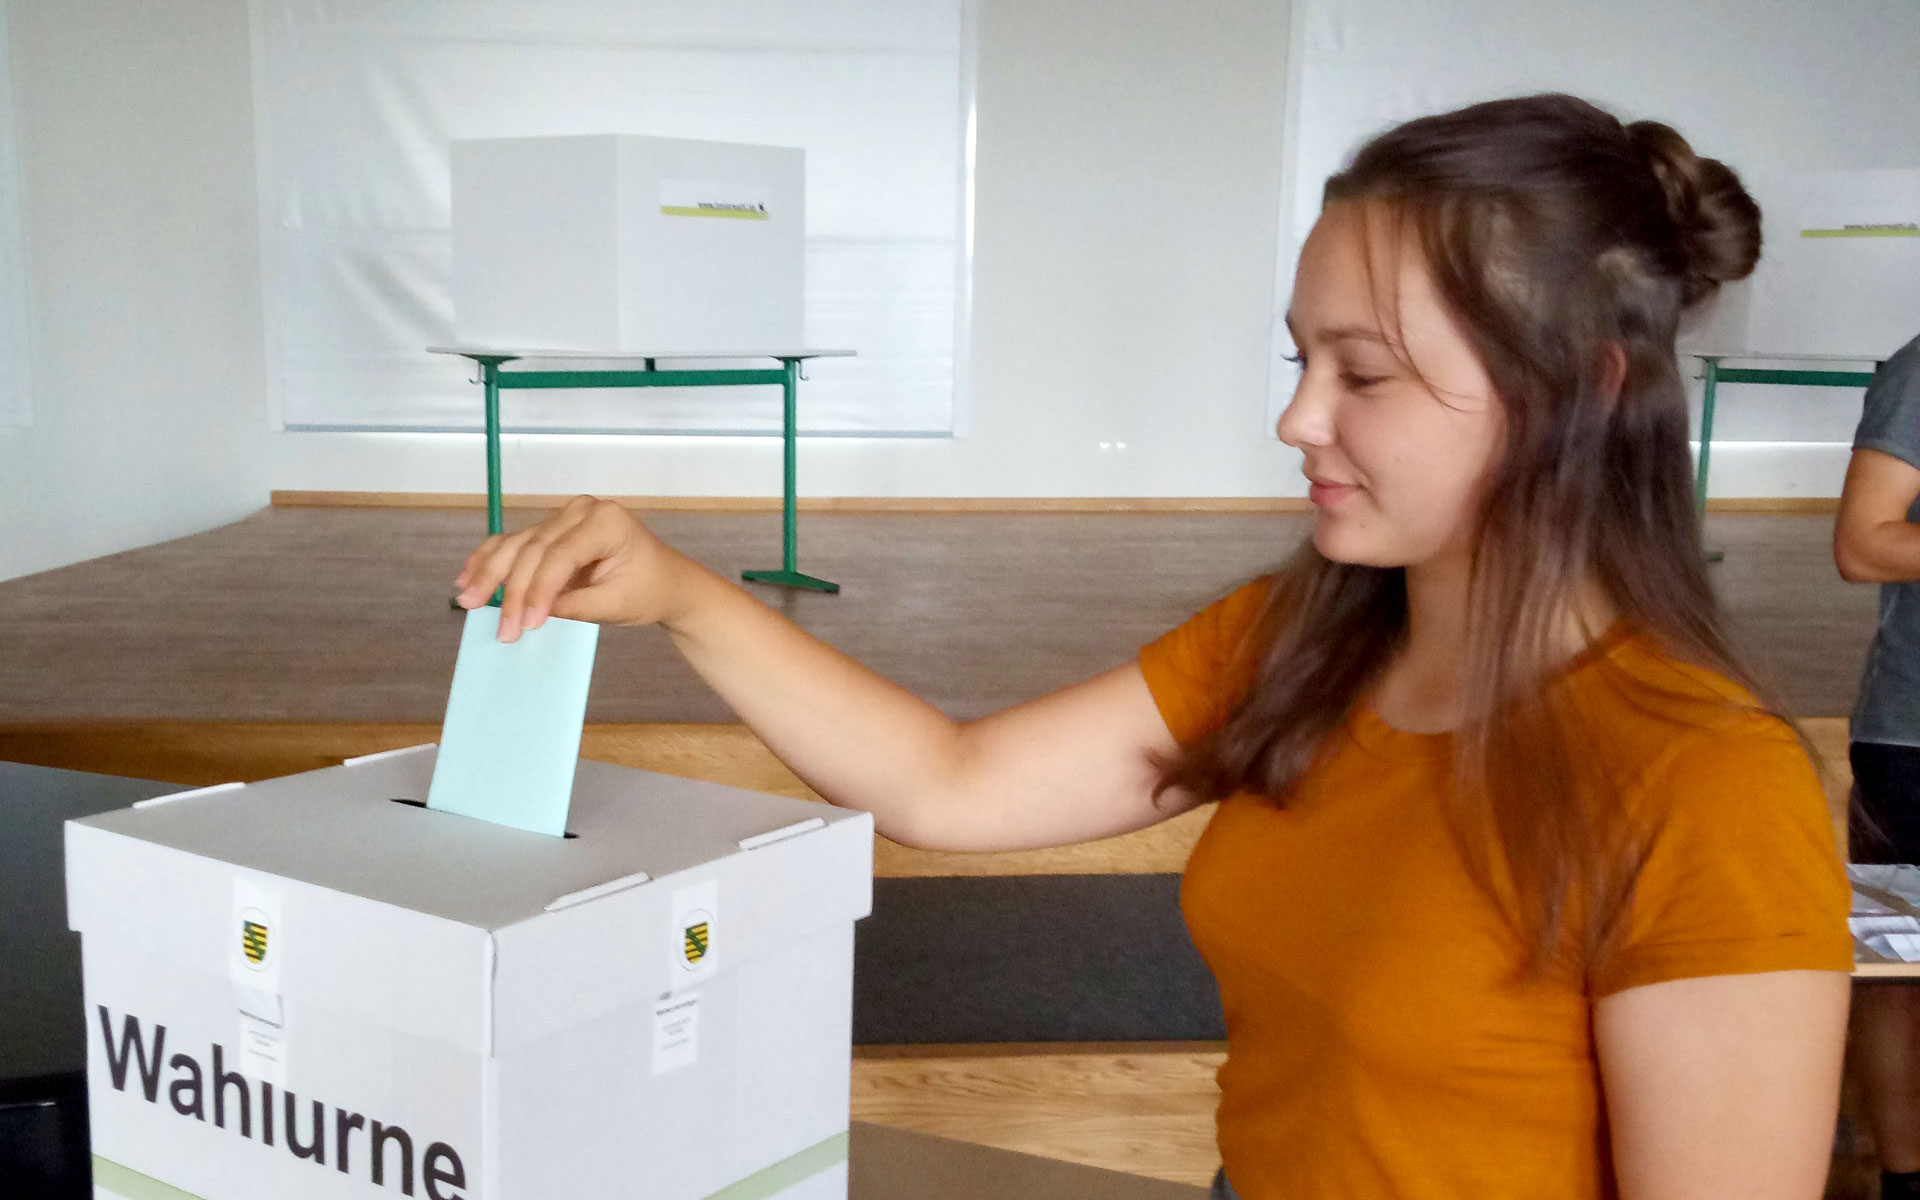 Juniorwahl zur Bundestagswahl in Sachsen 2021: das Geschwister-Scholl-Gymnasium ist mit dabei!